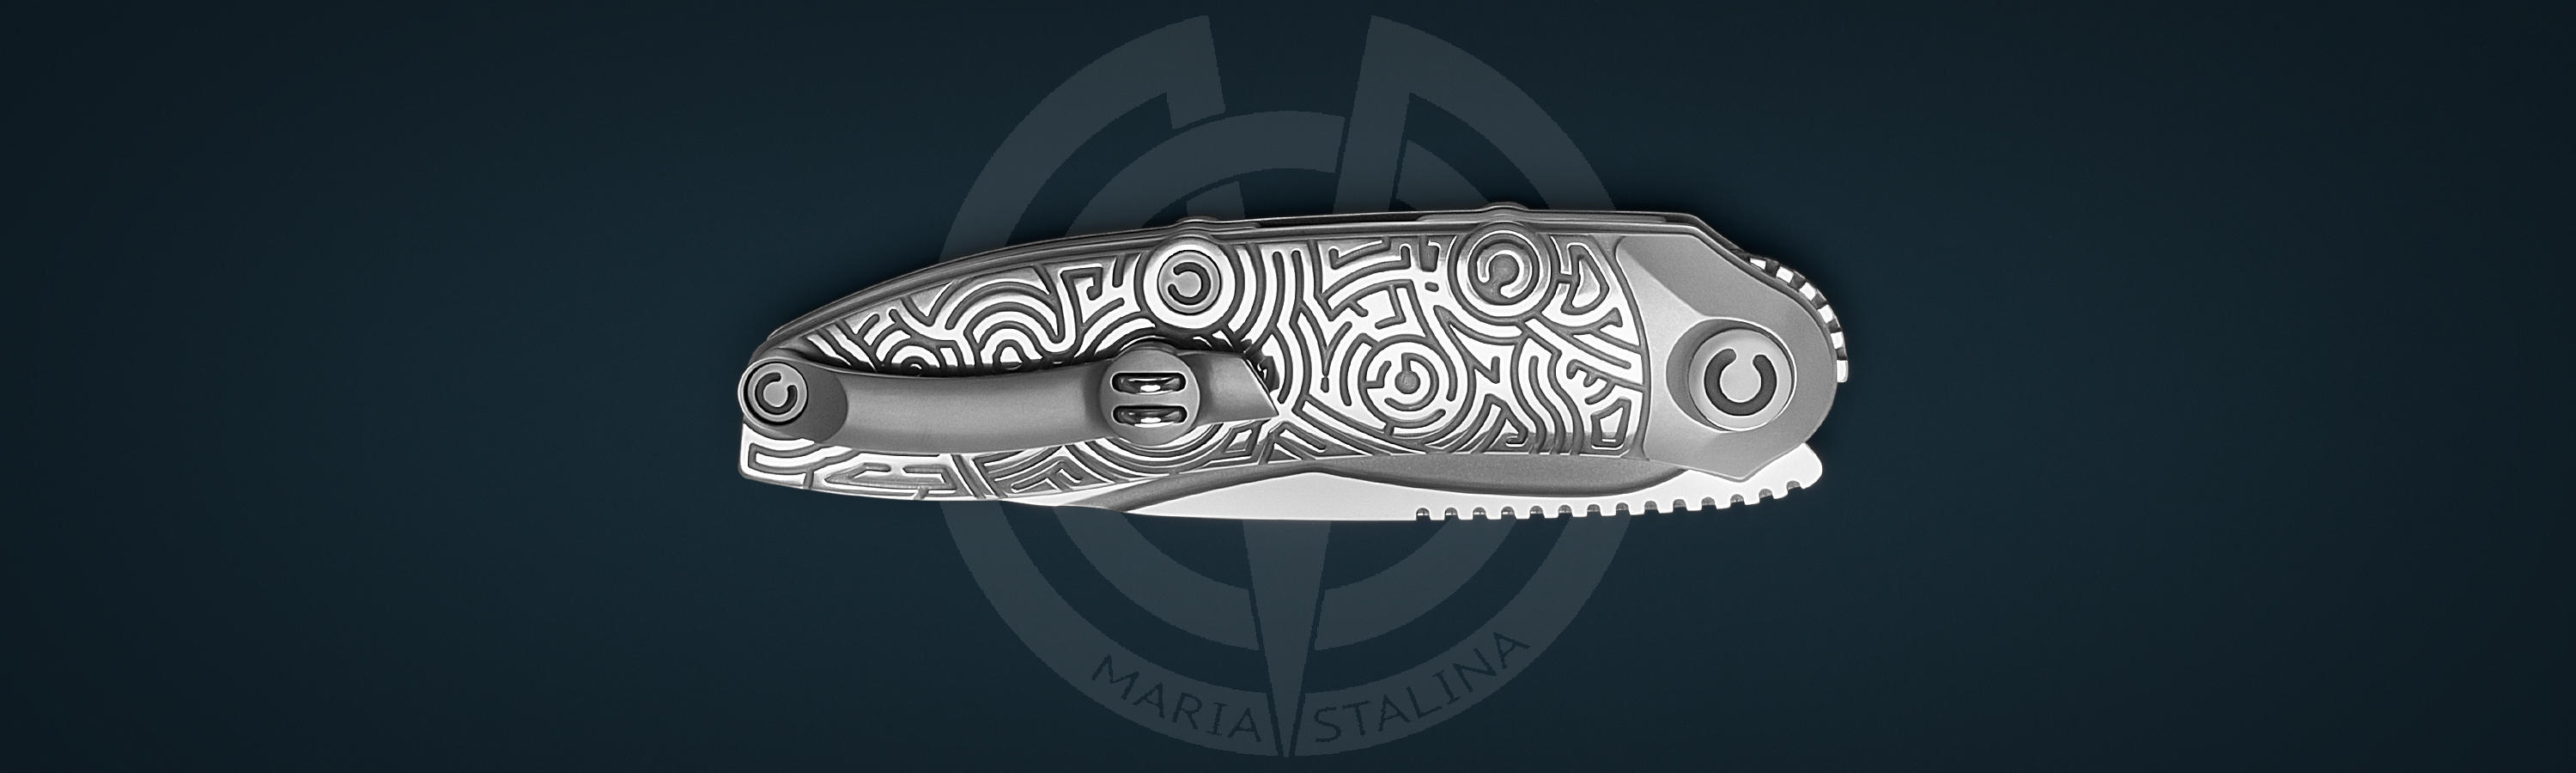 Titanium knife with engraving Technoshaman Proto 2.0